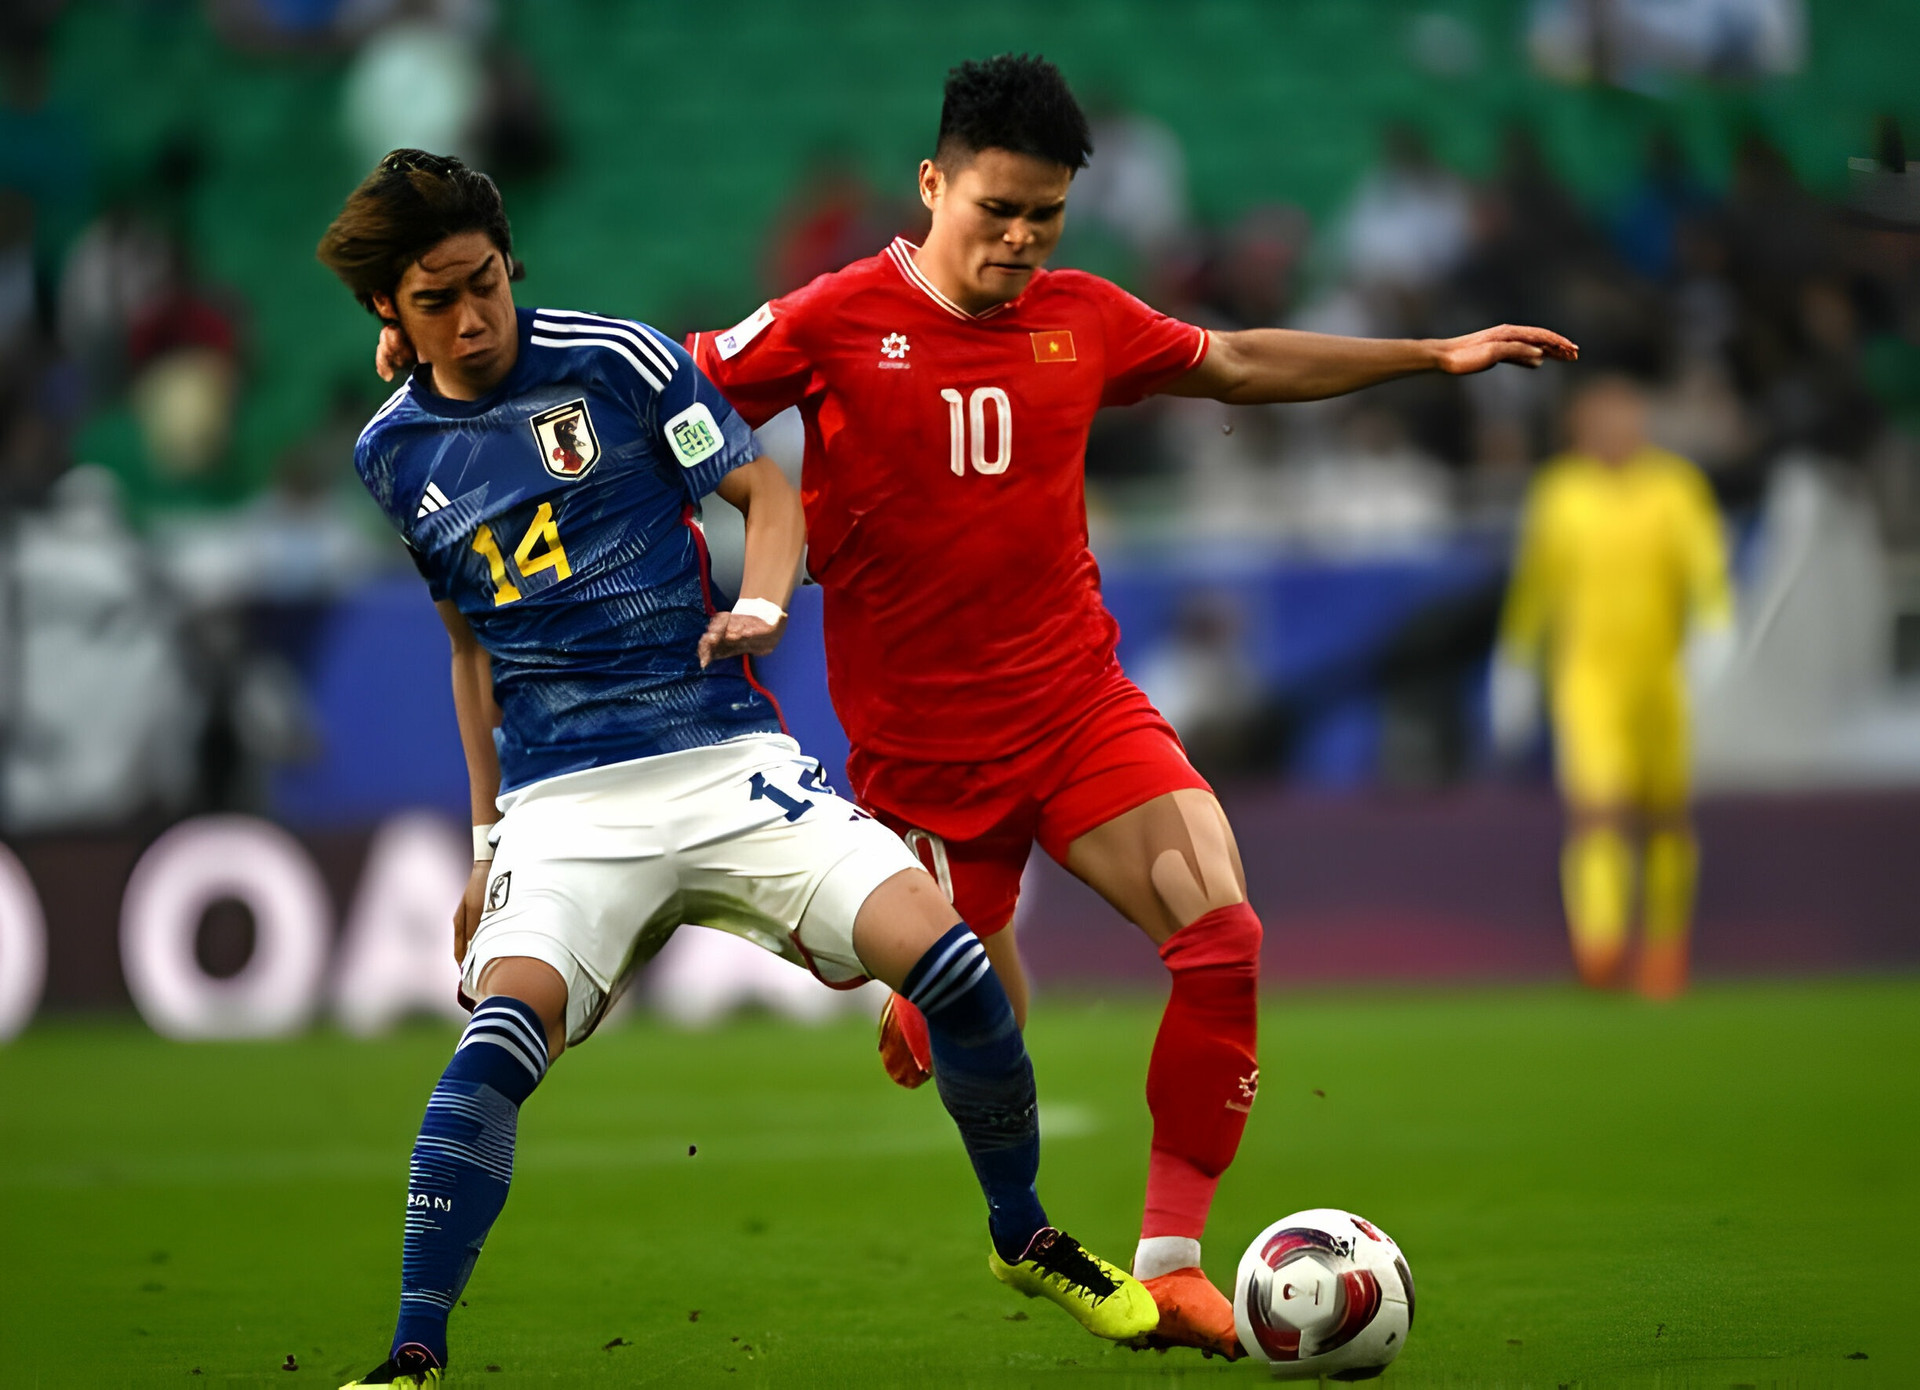 Báo Nhật Bản bình luận về chiến thắng của đội nhà trước tuyển Việt Nam - 3